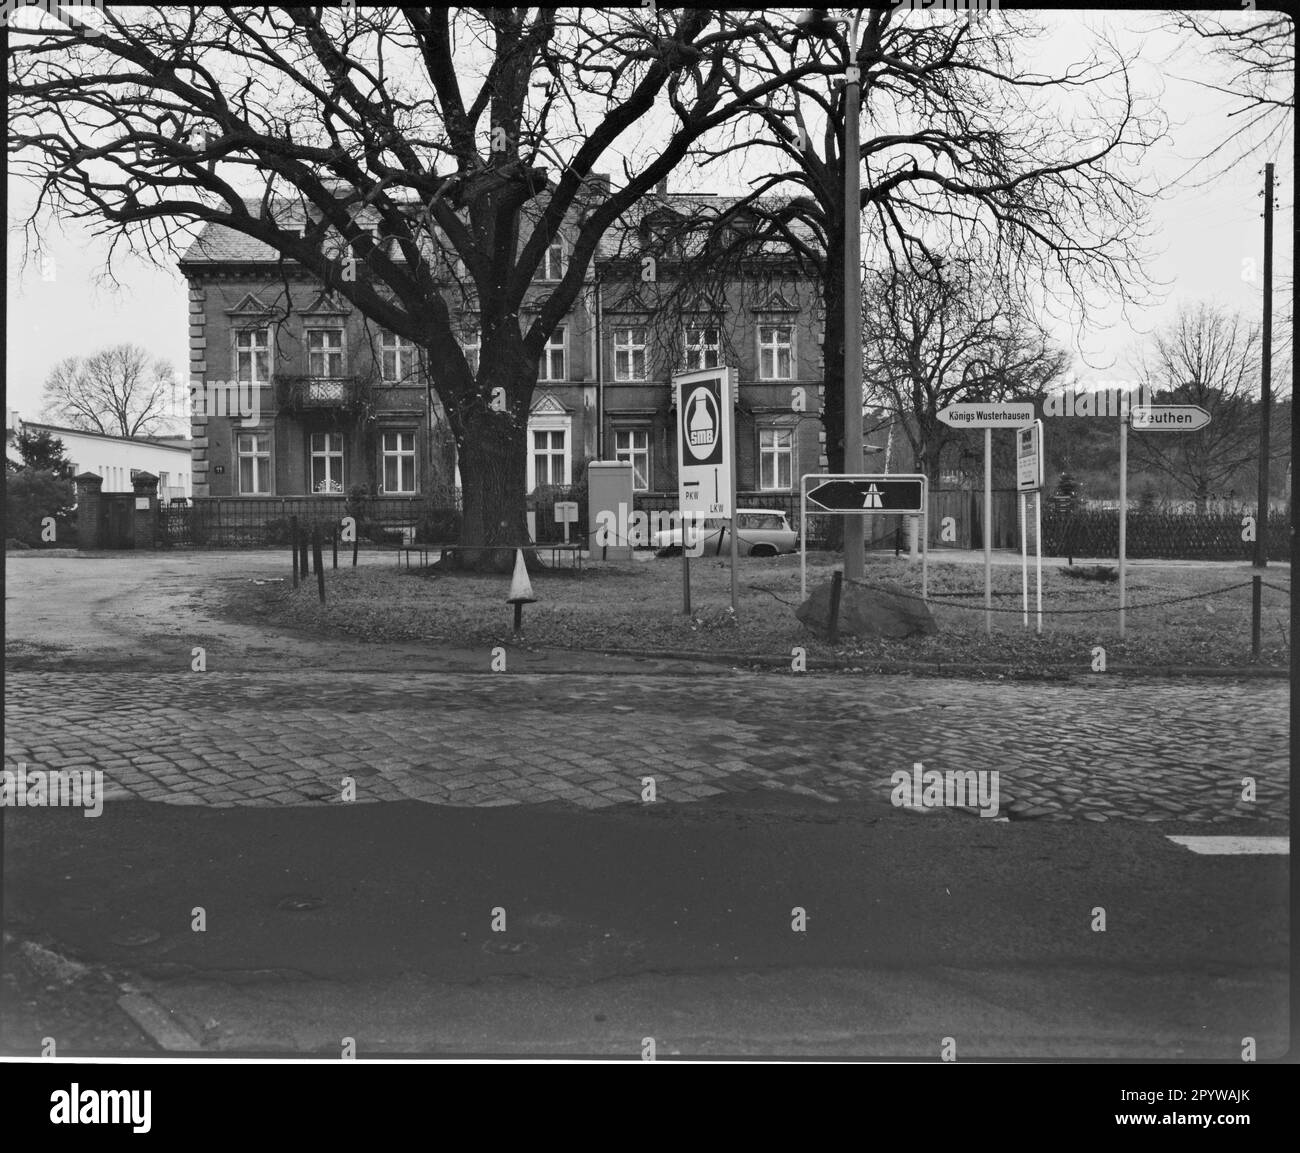 Passage de route avec arbre et panneaux en hiver. Wildau, quartier de Dahme-Spreewald, Brandebourg. Photo, 1993. Banque D'Images